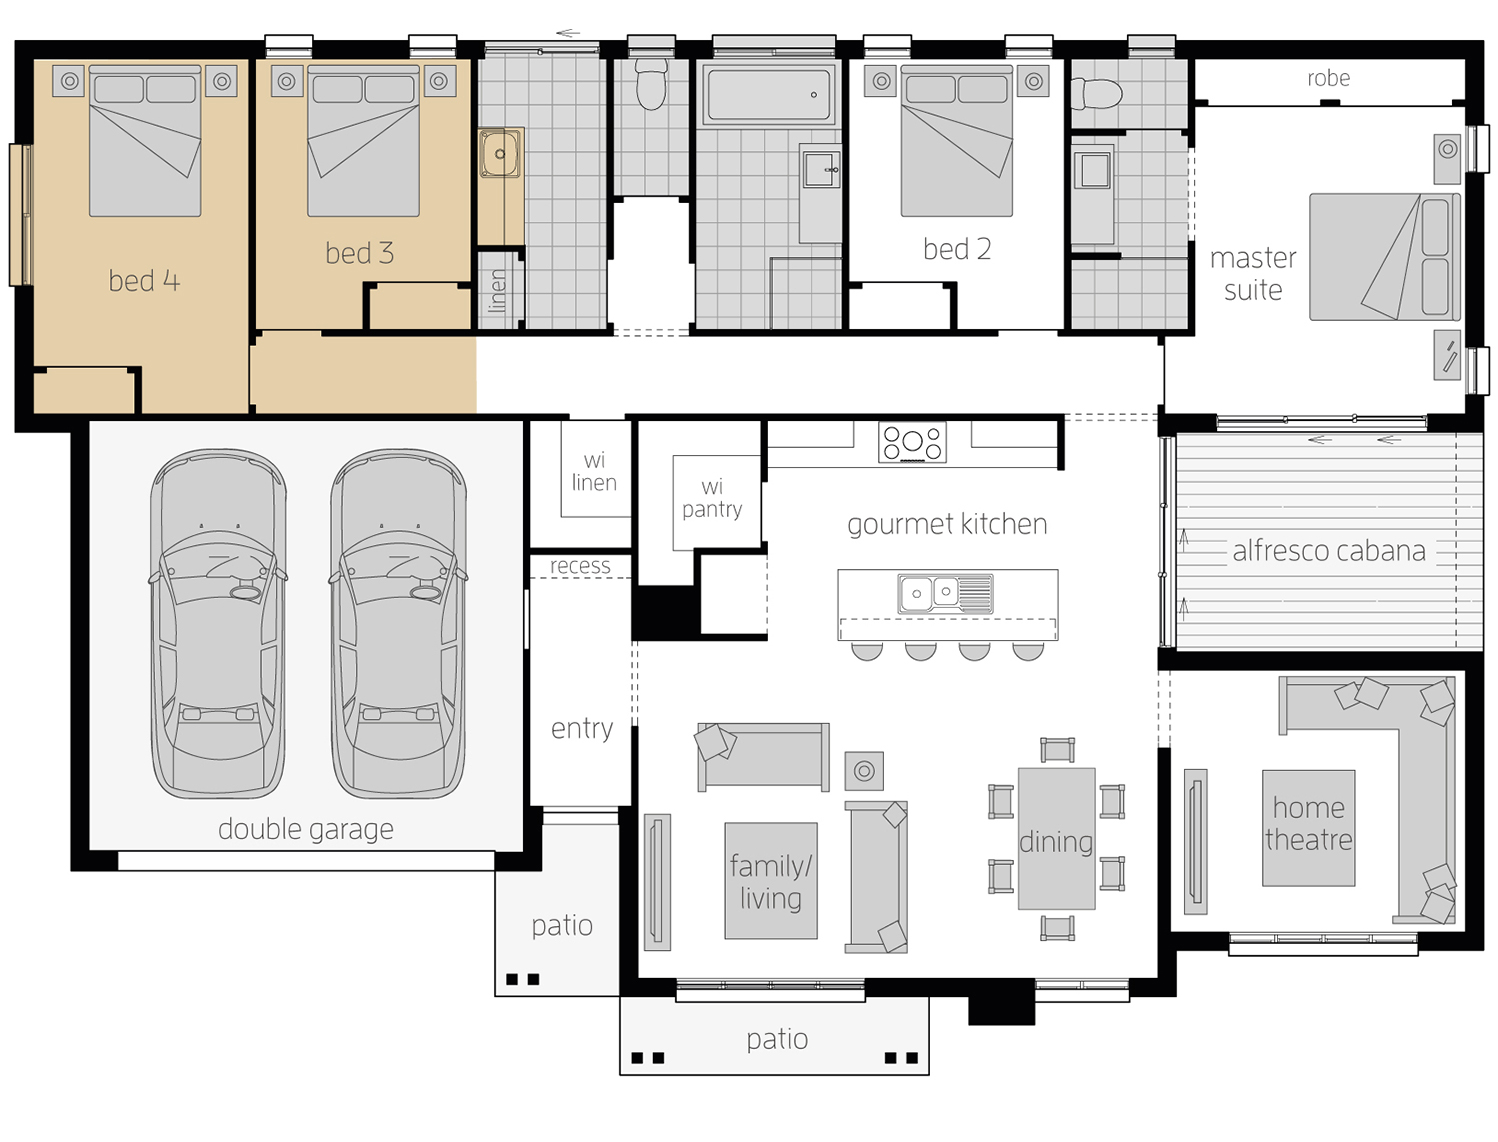 Floor Plan - Cambridge Upgrade - LHS - McDonald Jones